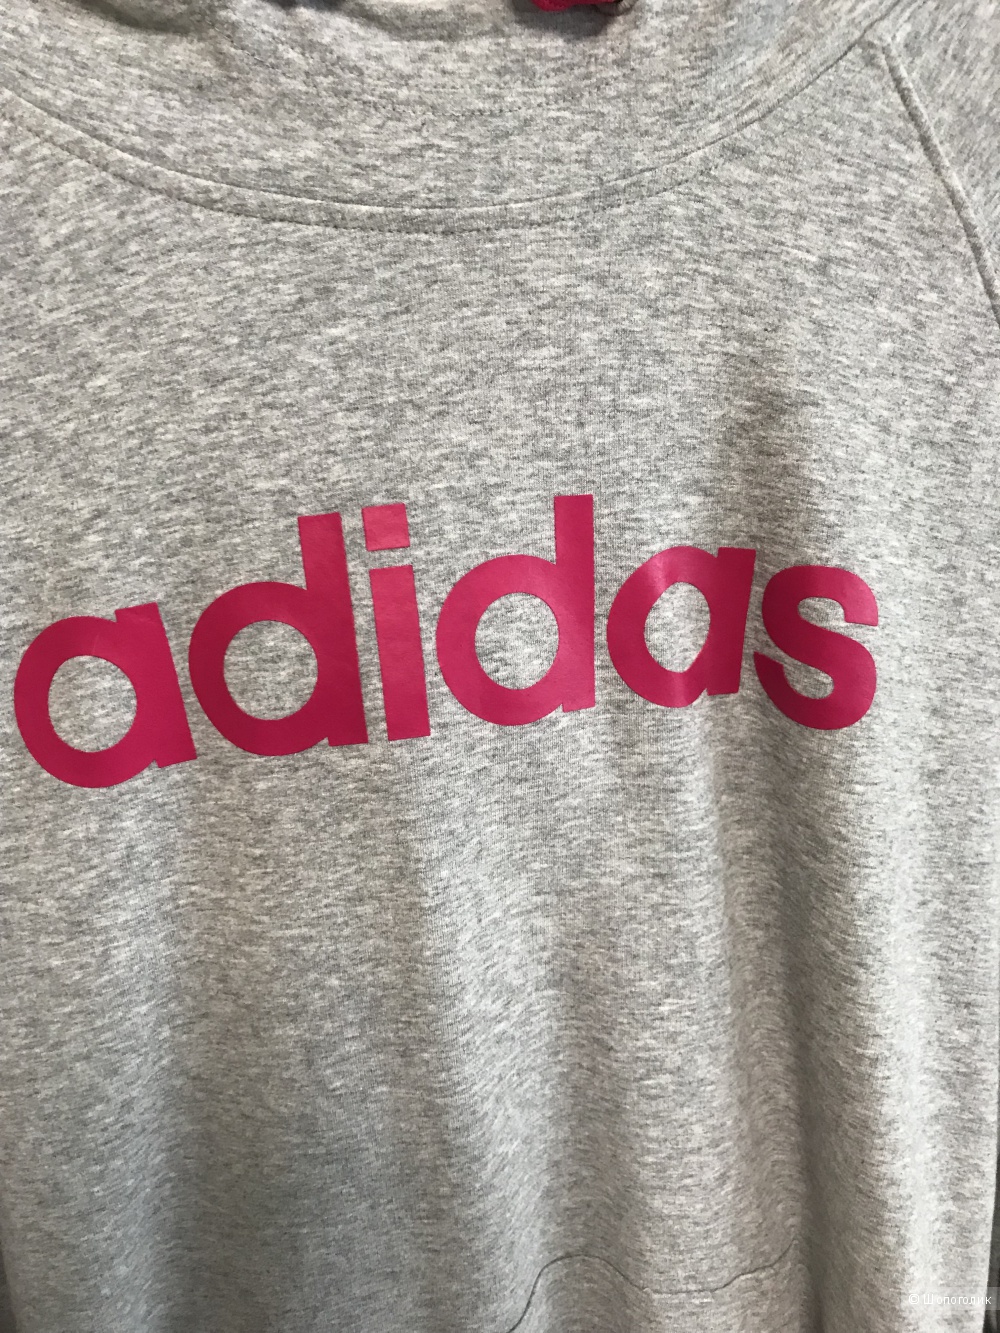 Кофта-худи, Adidas, размер S, 40-44 рус.